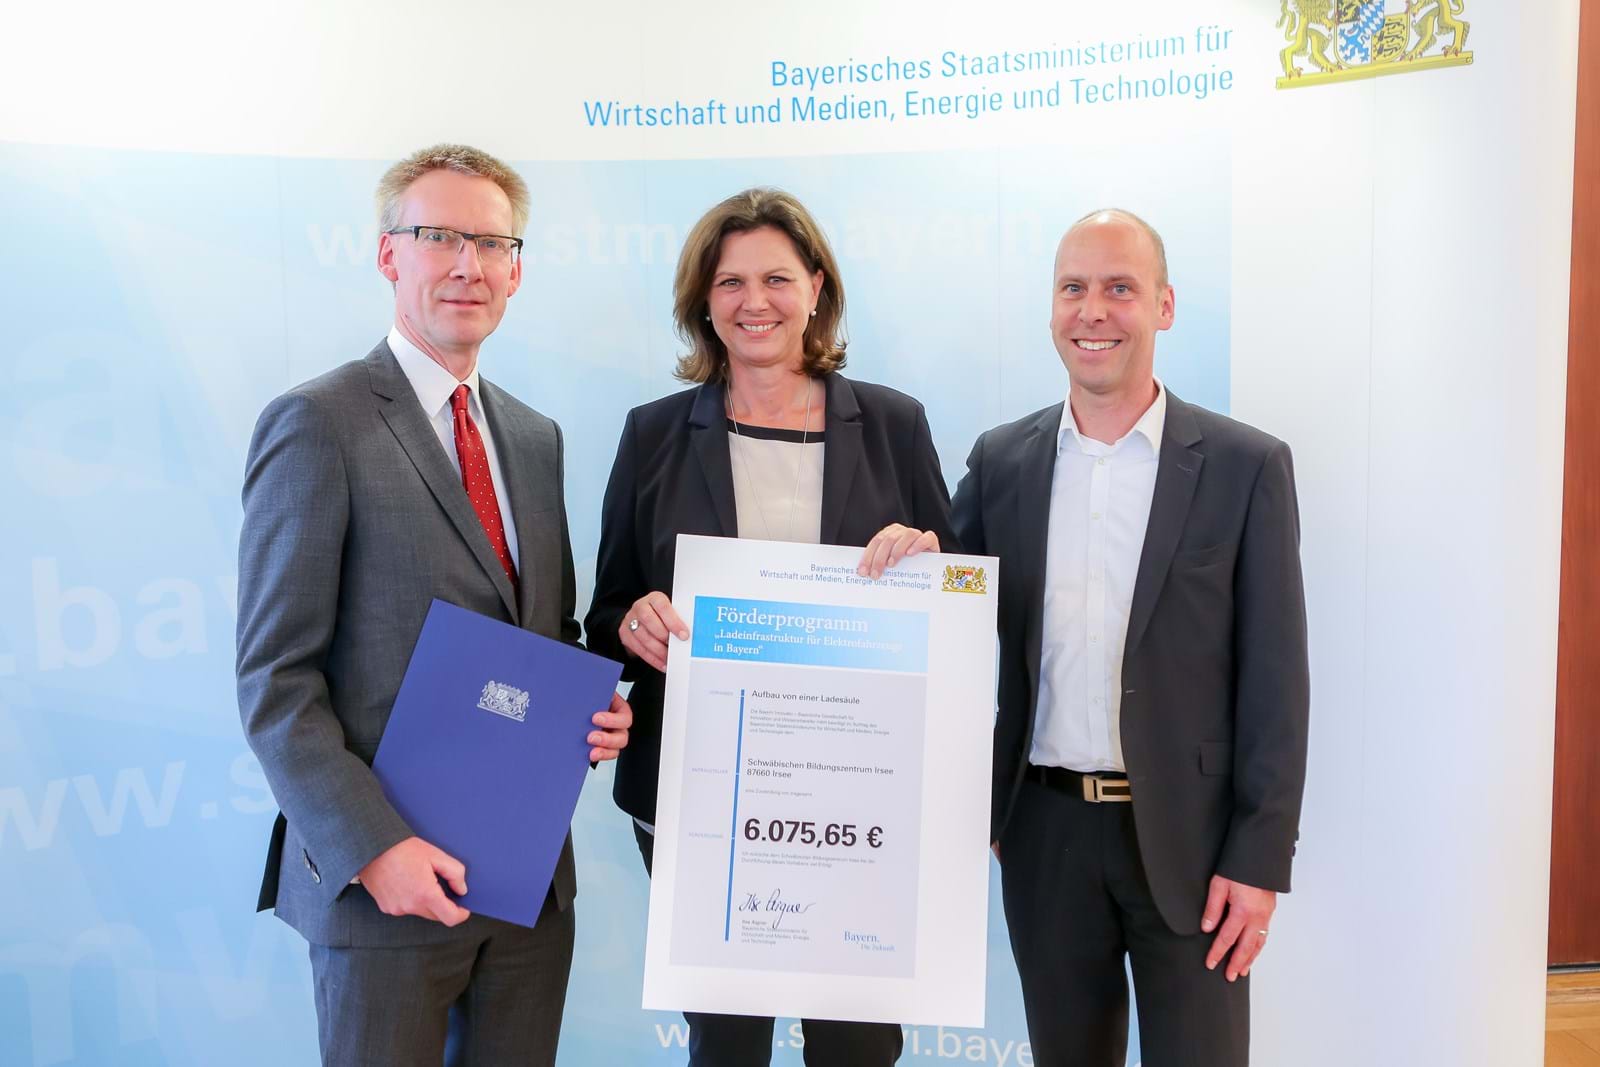 Andreas Bayer, Leiter des Geschäftskundenvertriebs bei LEW (rechts), und Dr. Stefan Raueiser, Leiter des Schwäbischen Bildungszentrums Irsee (links), haben den positiven Förderbescheid von Bayerns Wirtschaftsministerin Ilse Aigner entgegengenommen.